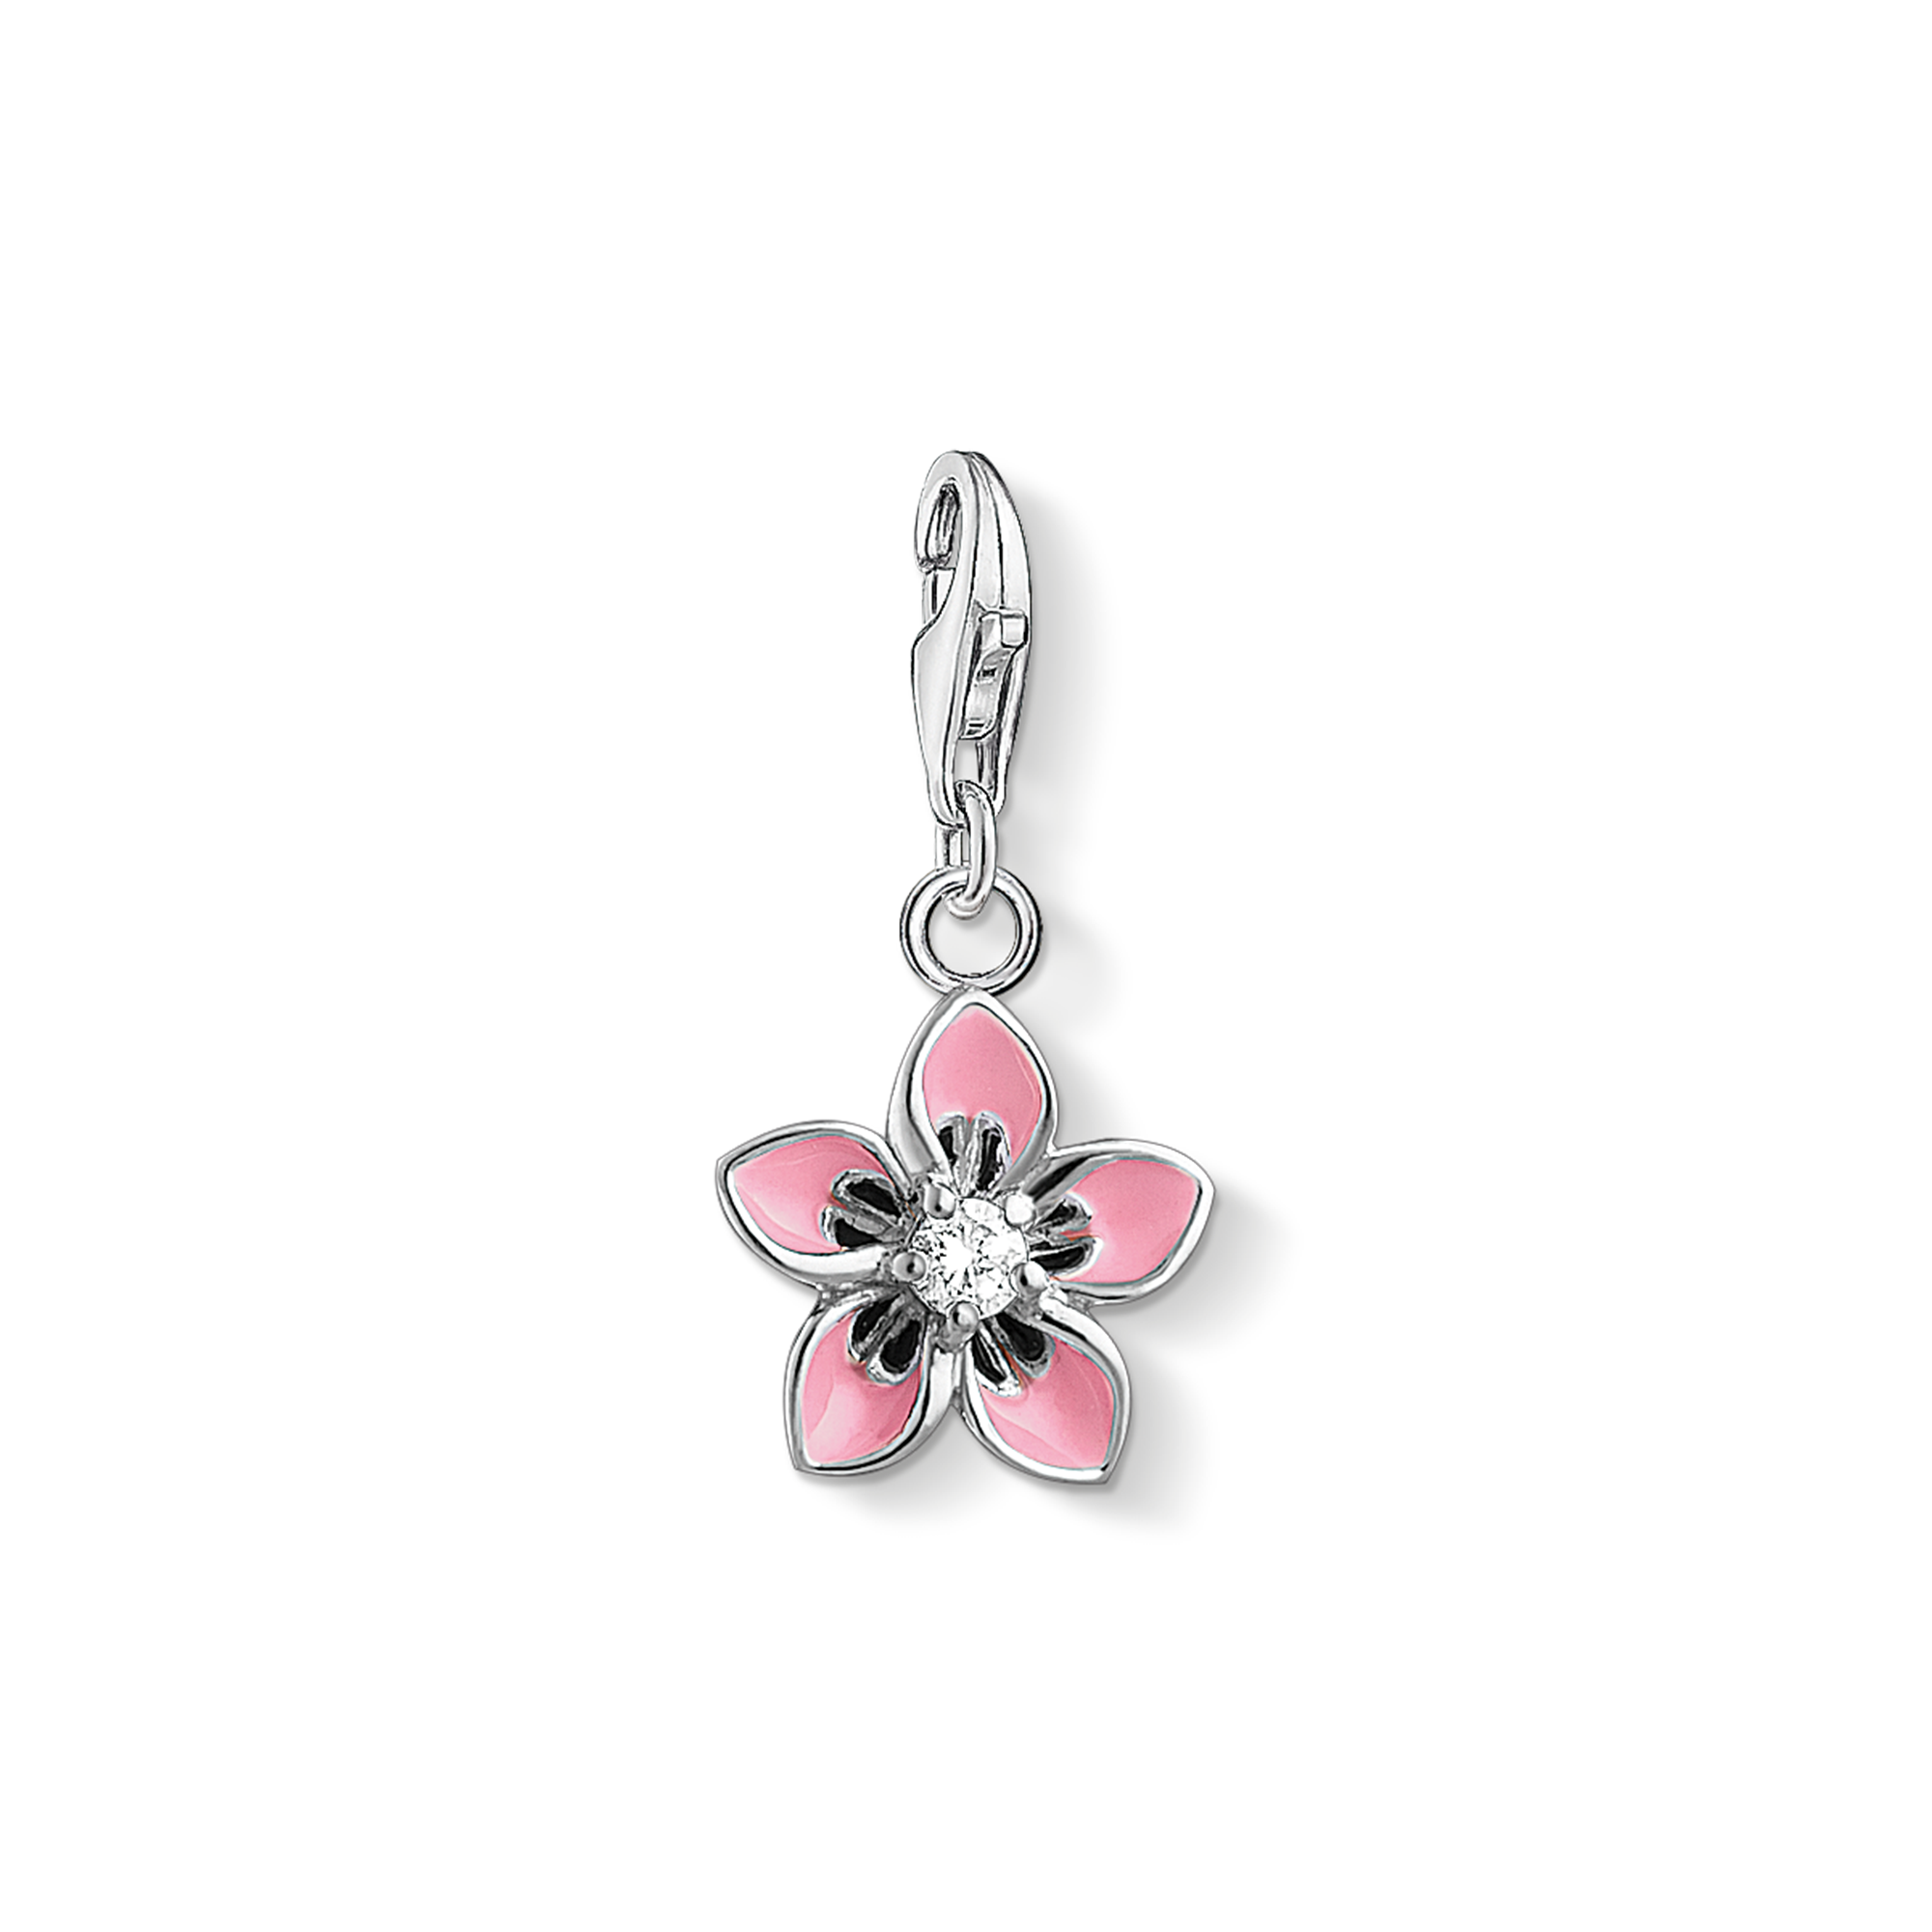 Flower-Power: Der leuchtende Blumen-Charm aus 925er Sterlingsilber mit weißem Zirkonia-Besatz und pink emaillierten Blütenblättern sorgt für die beste Sommerlaune. - 0